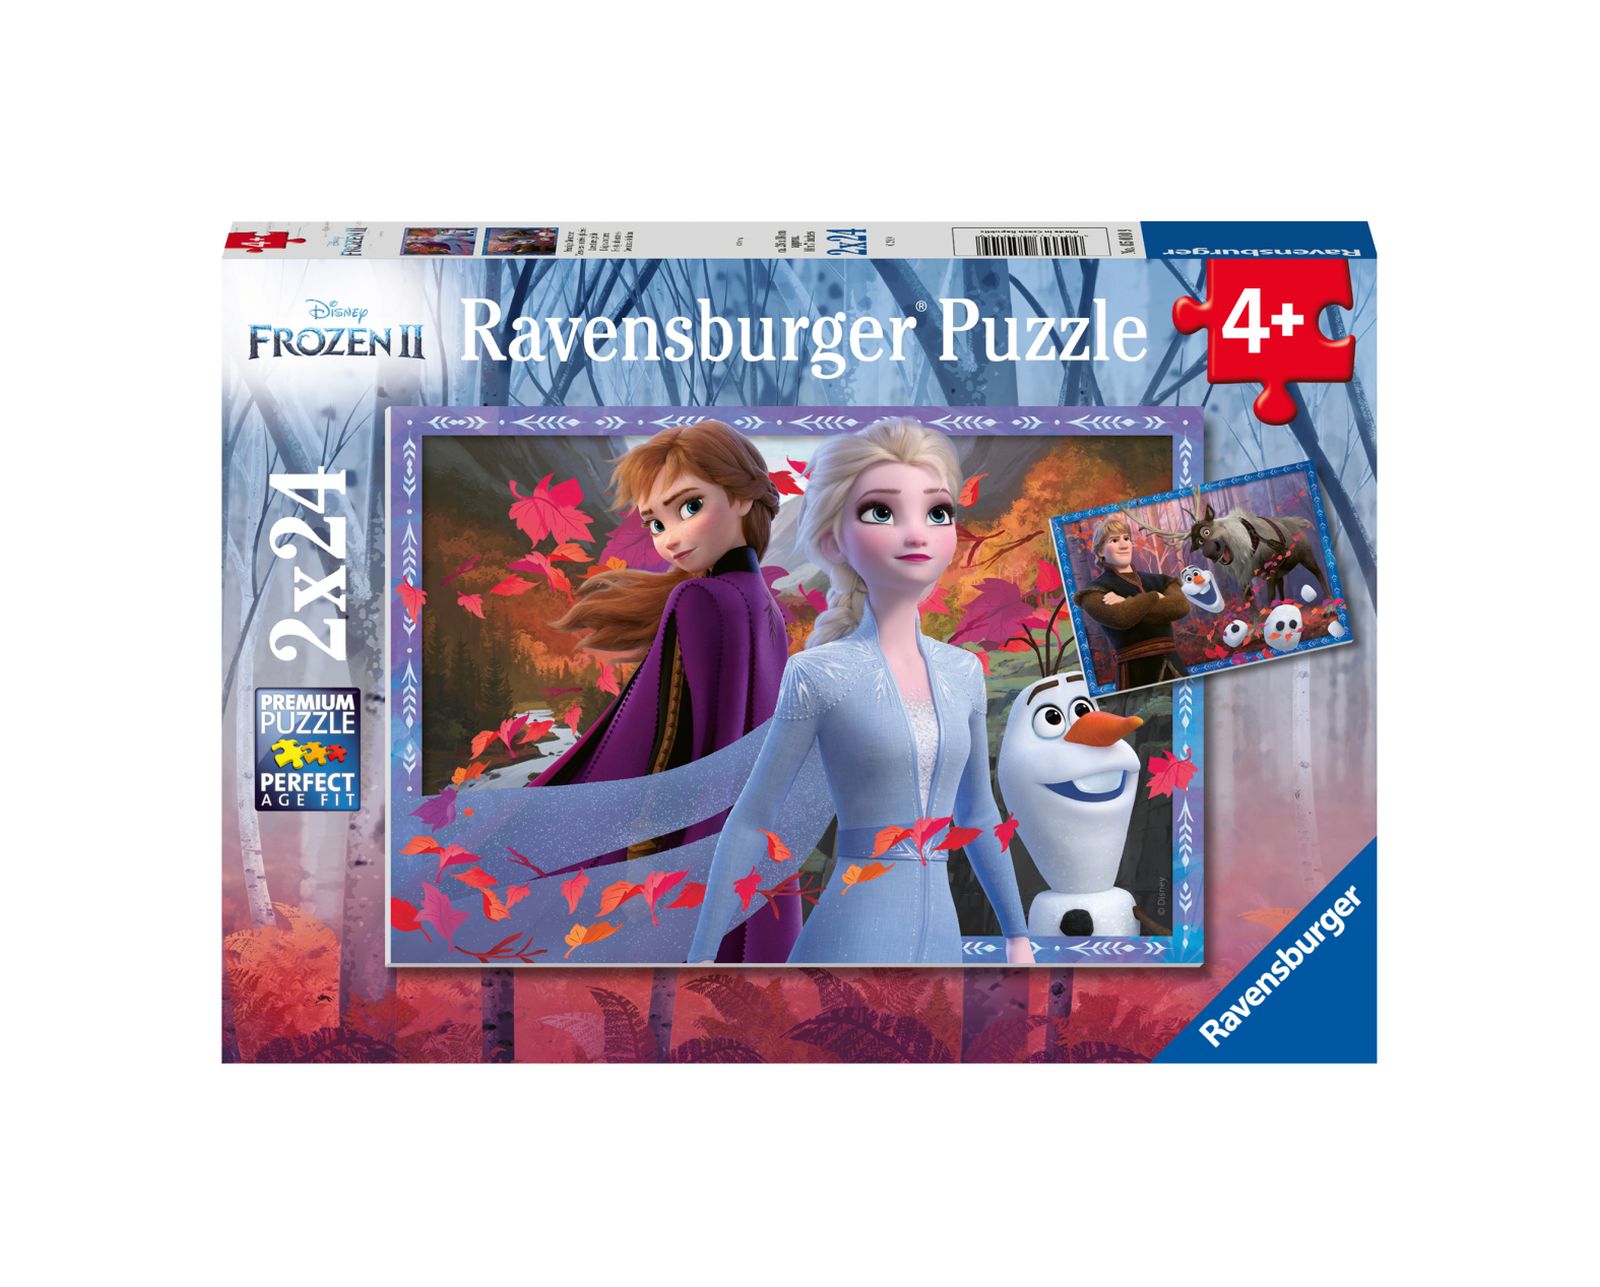 Ravensburger 2 puzzle 24 pezzi - disney frozen - RAVENSBURGER, Frozen